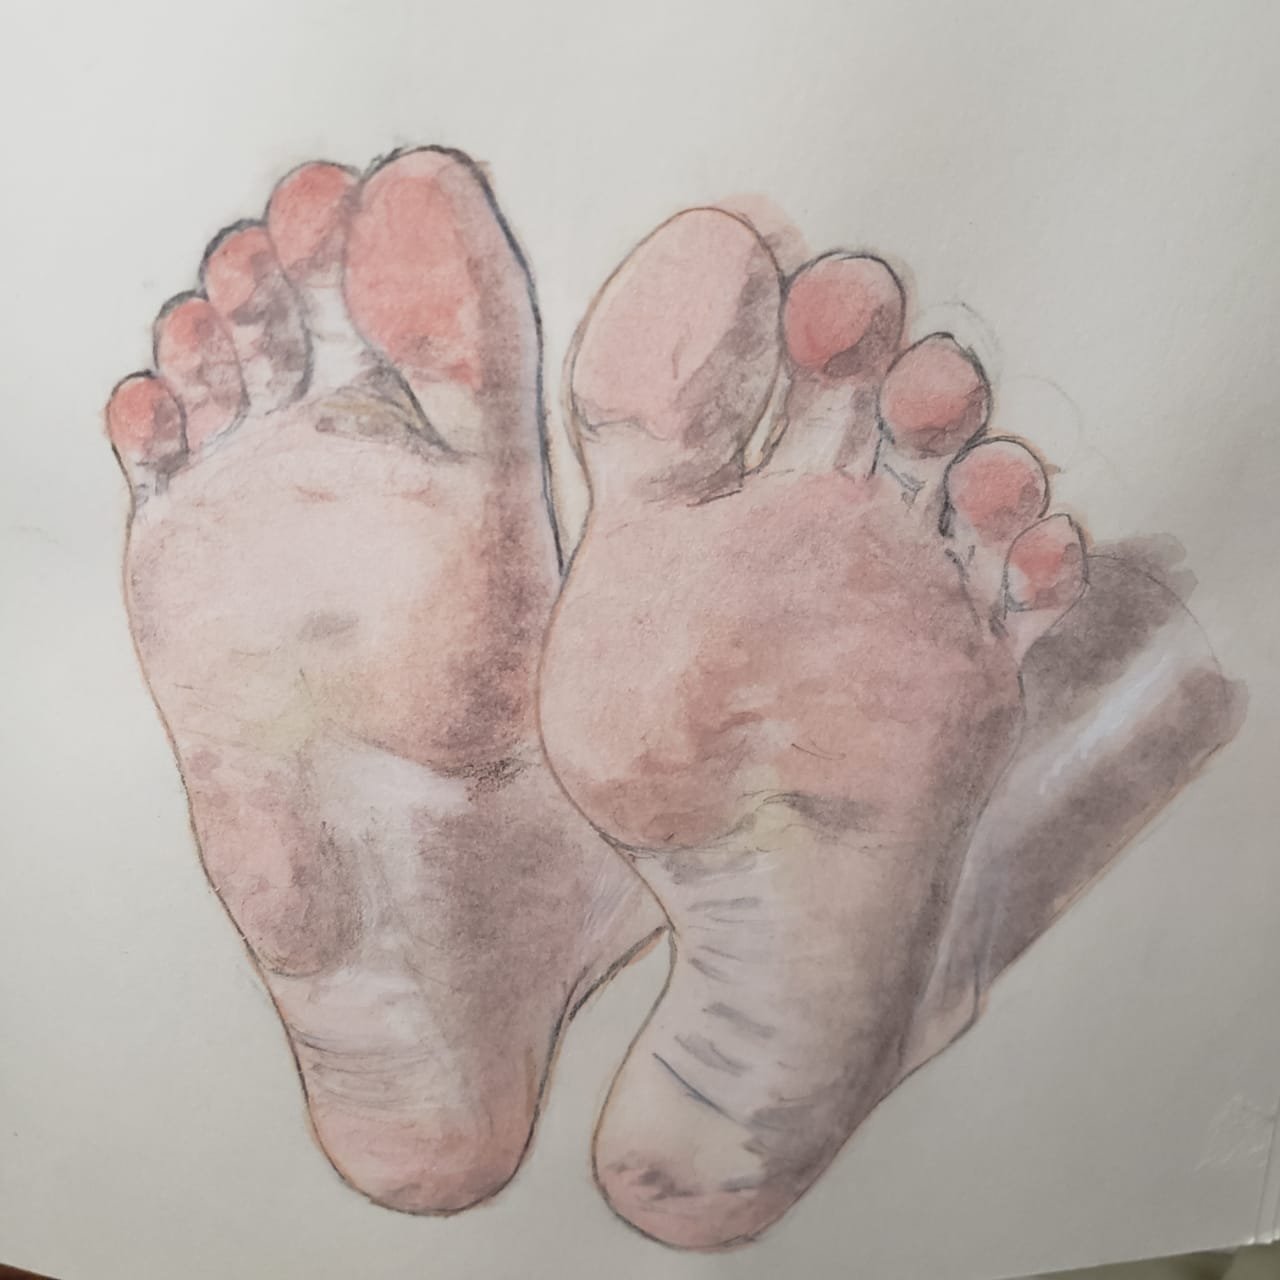 Barefoot (pies descalzos)